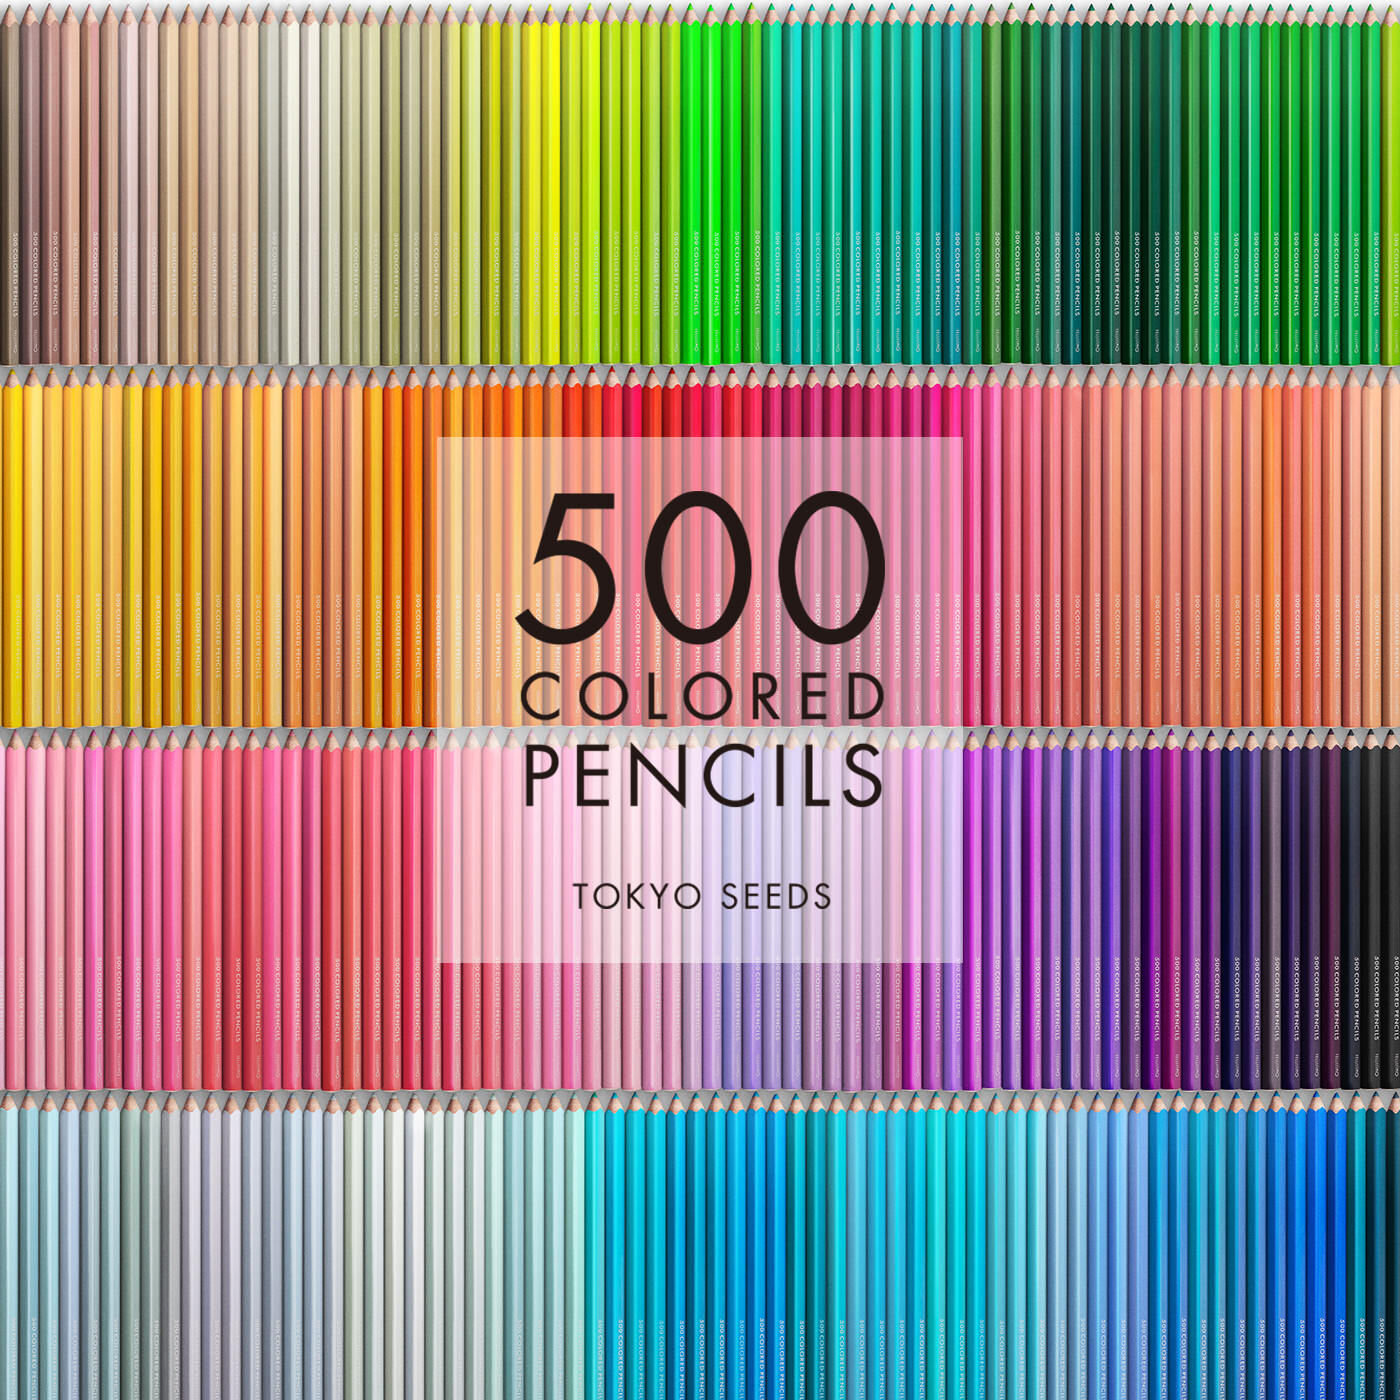 Real Stock|【354/500 OLD OLIVE】500色の色えんぴつ TOKYO SEEDS|1992年、世界初の「500色」という膨大な色数の色えんぴつが誕生して以来、その販売数は発売当初から合わせると、世界55ヵ国10万セット以上。今回、メイド・イン・ジャパンにこだわり、すべてが新しく生まれ変わって登場しました。